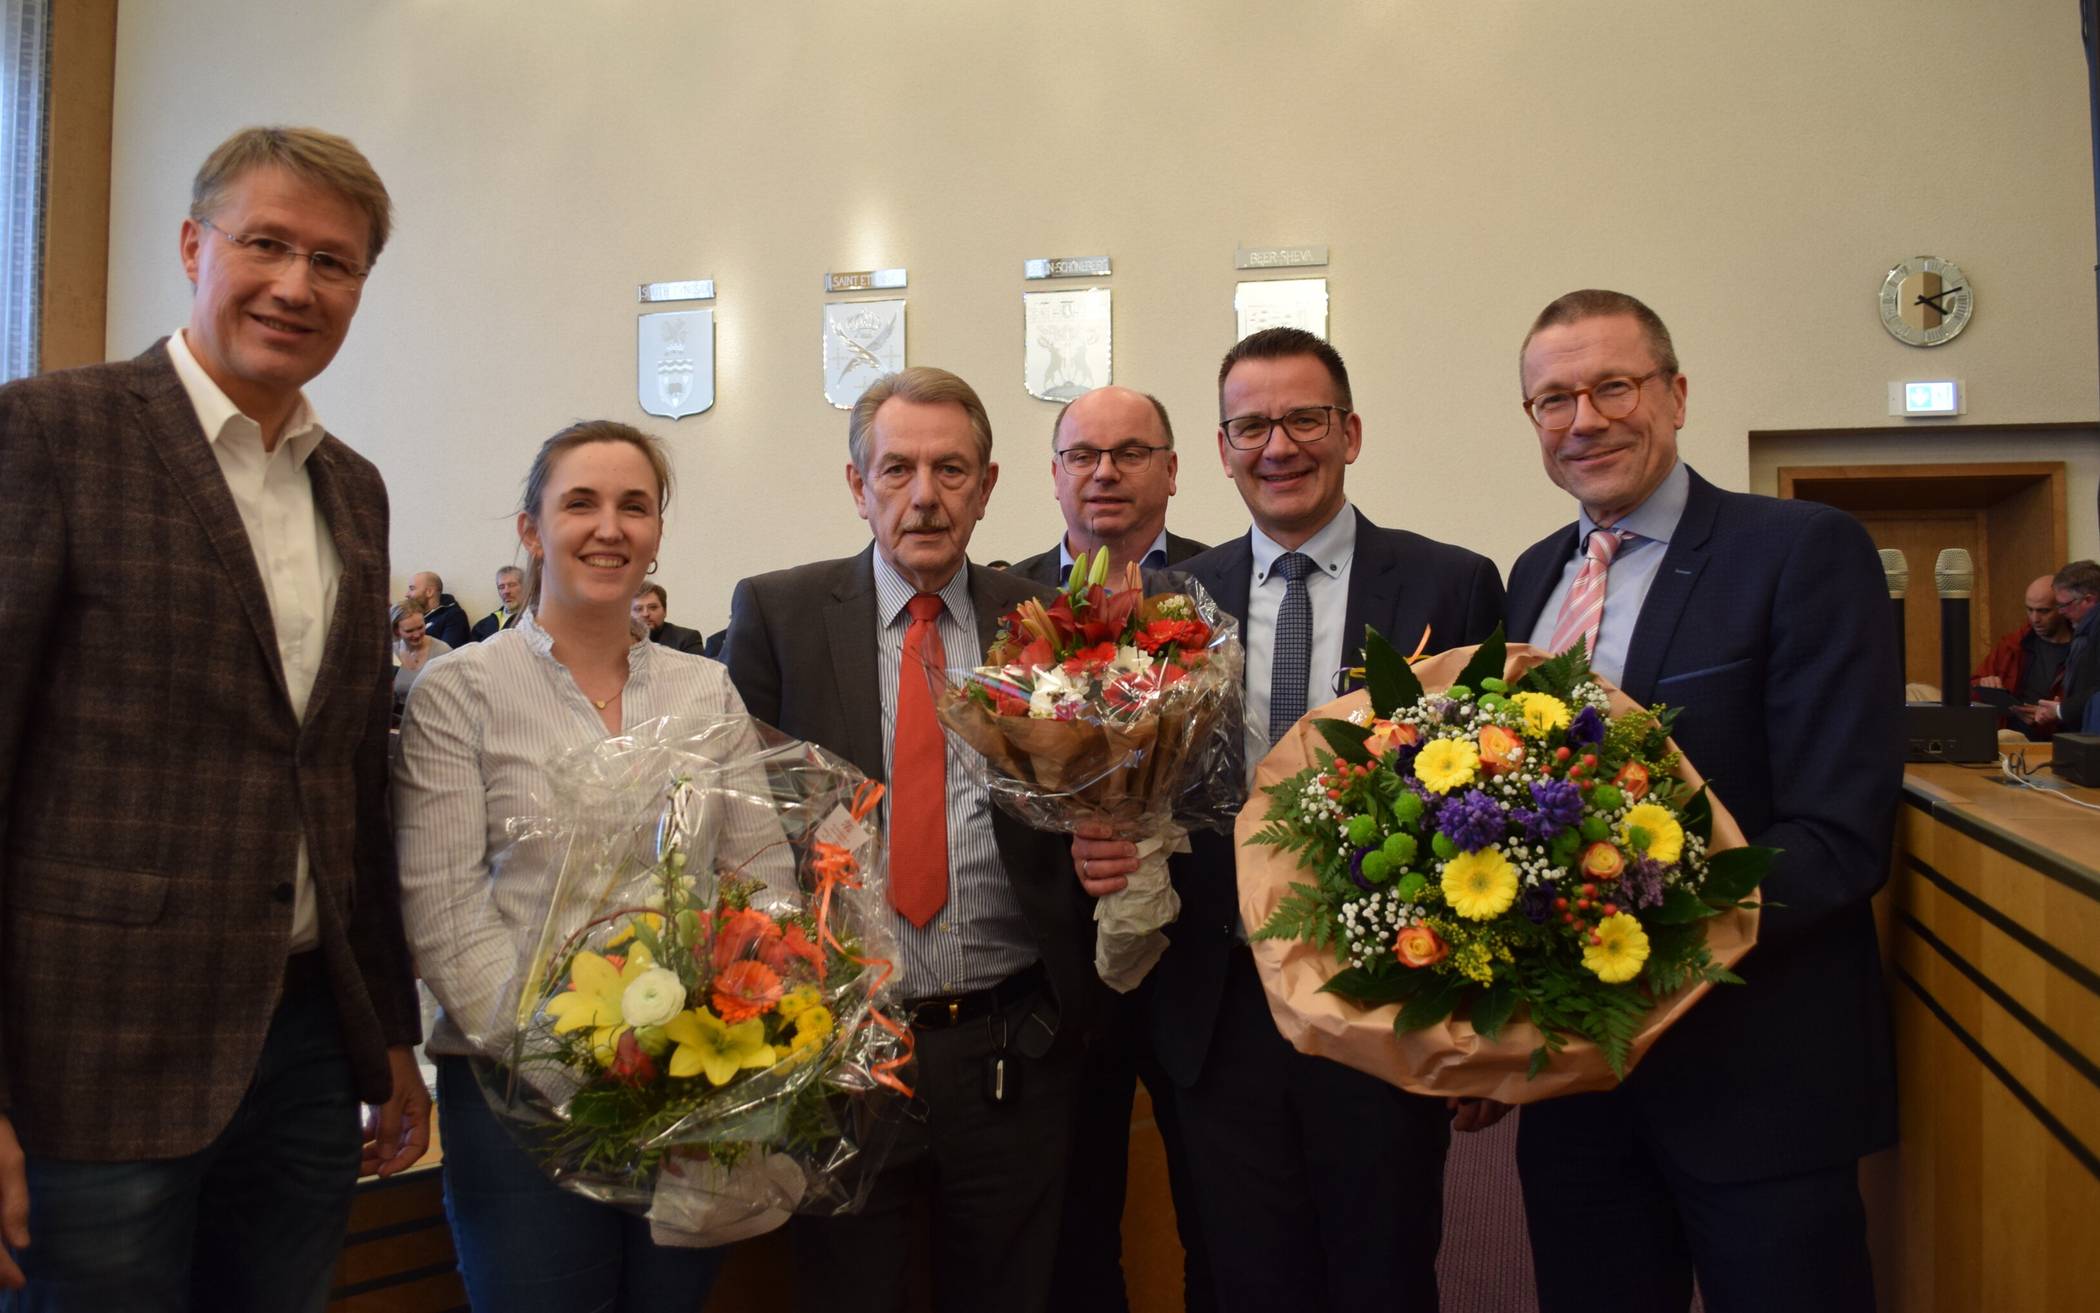 Bild von der Wahl des neuen Beigeordneten (von li.): Ludger Kineke, Caroline Lünenschloss (beide CDU), Klaus Jürgen Reese (SPD), Alexander Schmidt (FDP), Thorsten Bunte und OB Uwe Schneidewind.